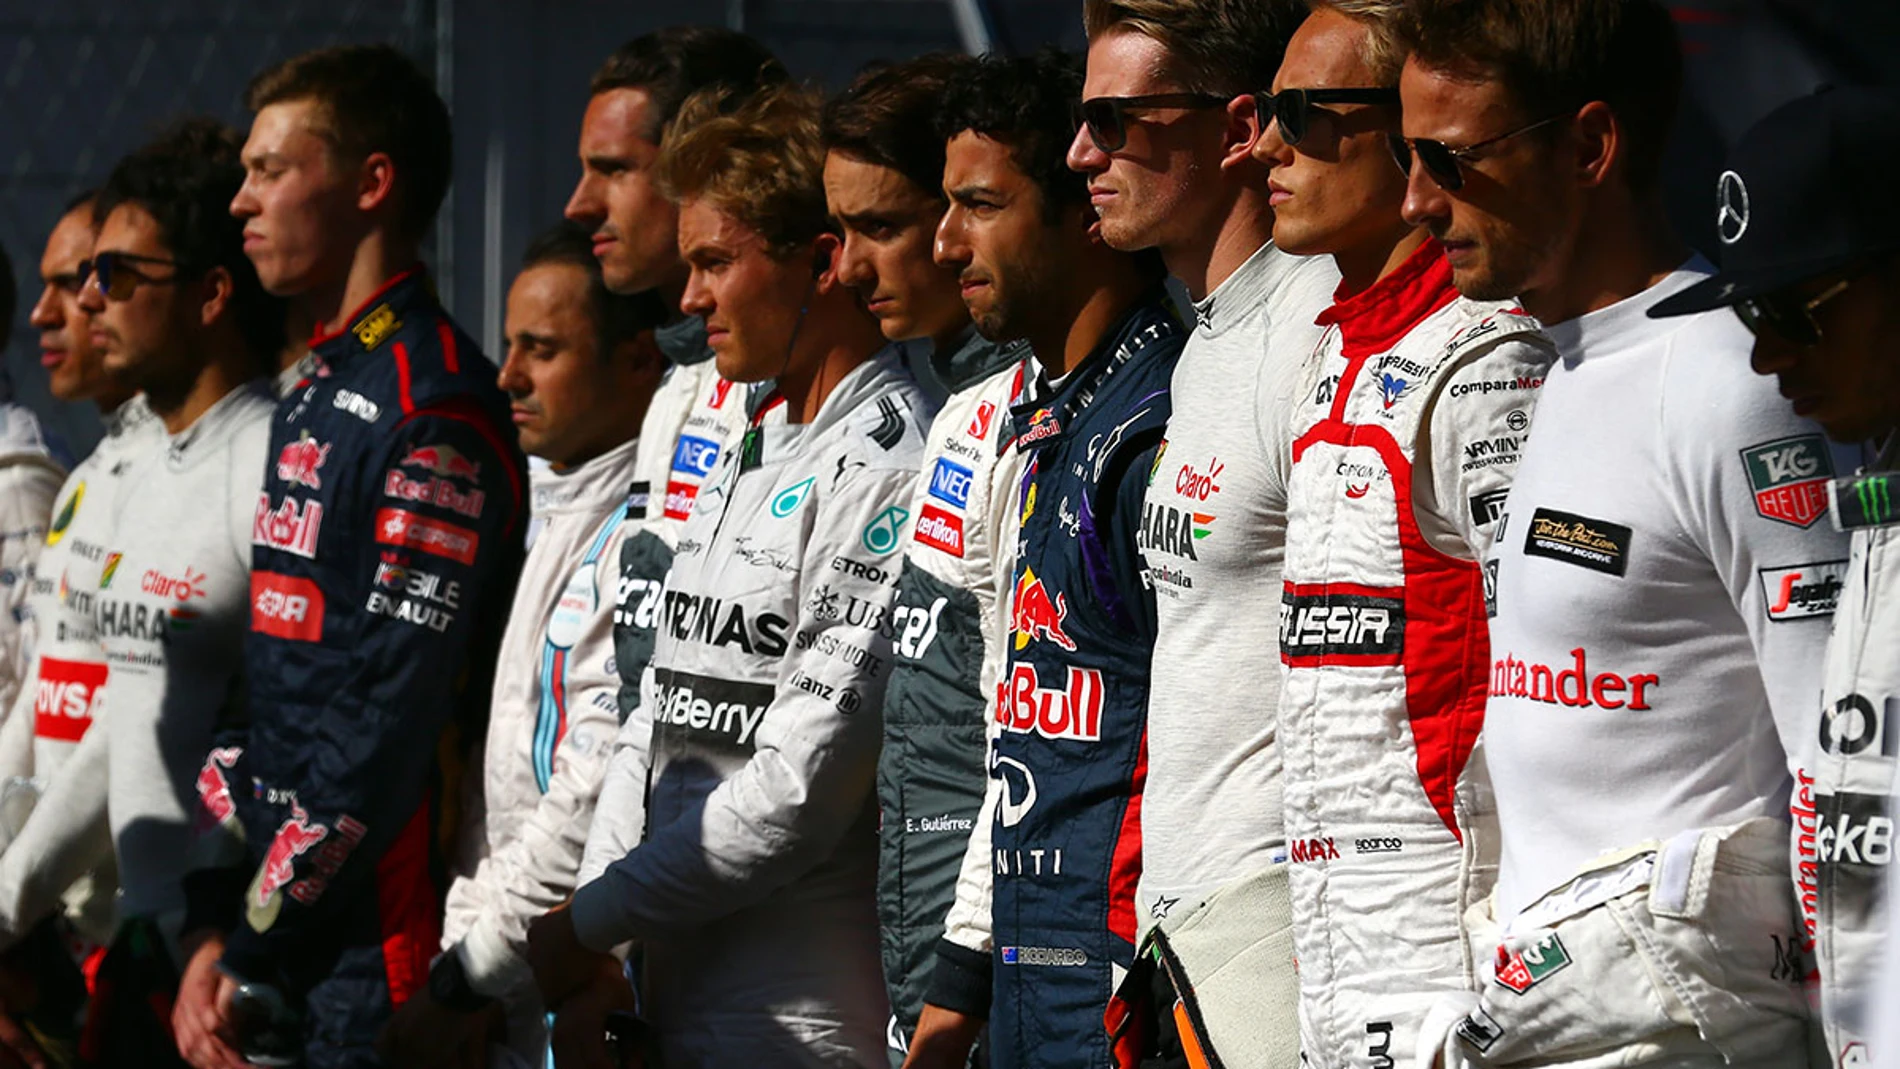 Los pilotos de Fórmula 1 guardan un minuto de silencio en Sukuza tras el accidente de Bianchi